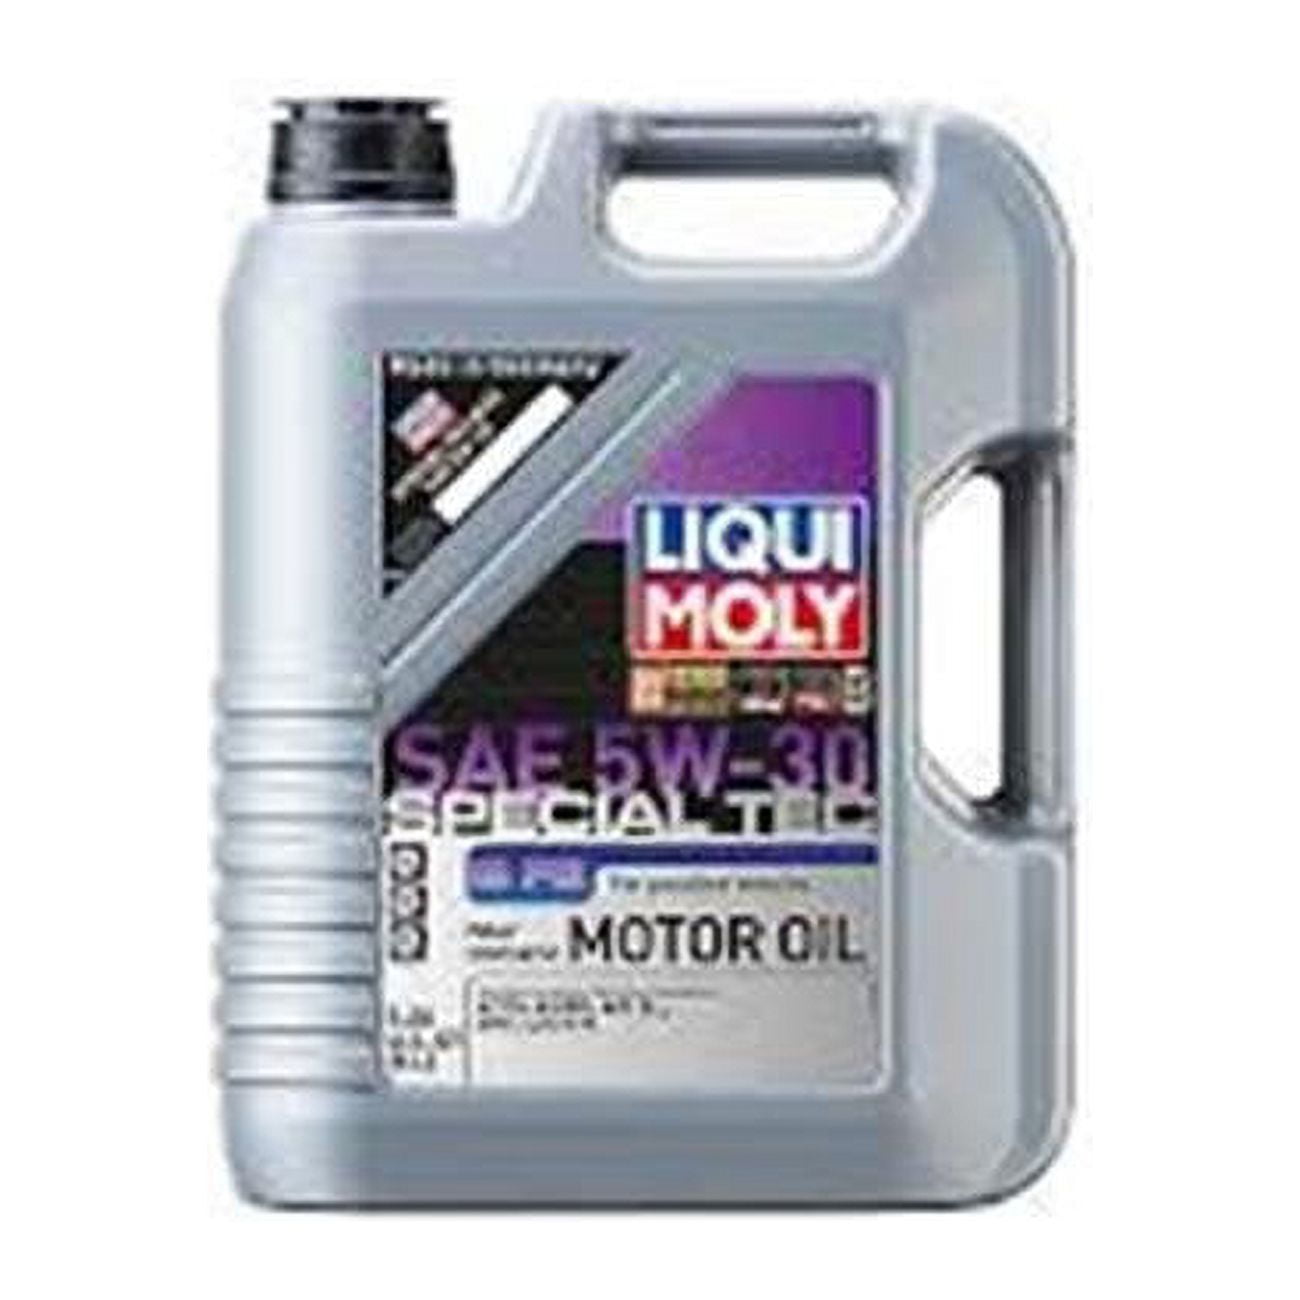 Liqui Moly 20442 1 L SAE 5W-30 Special Tec Motor Oil 